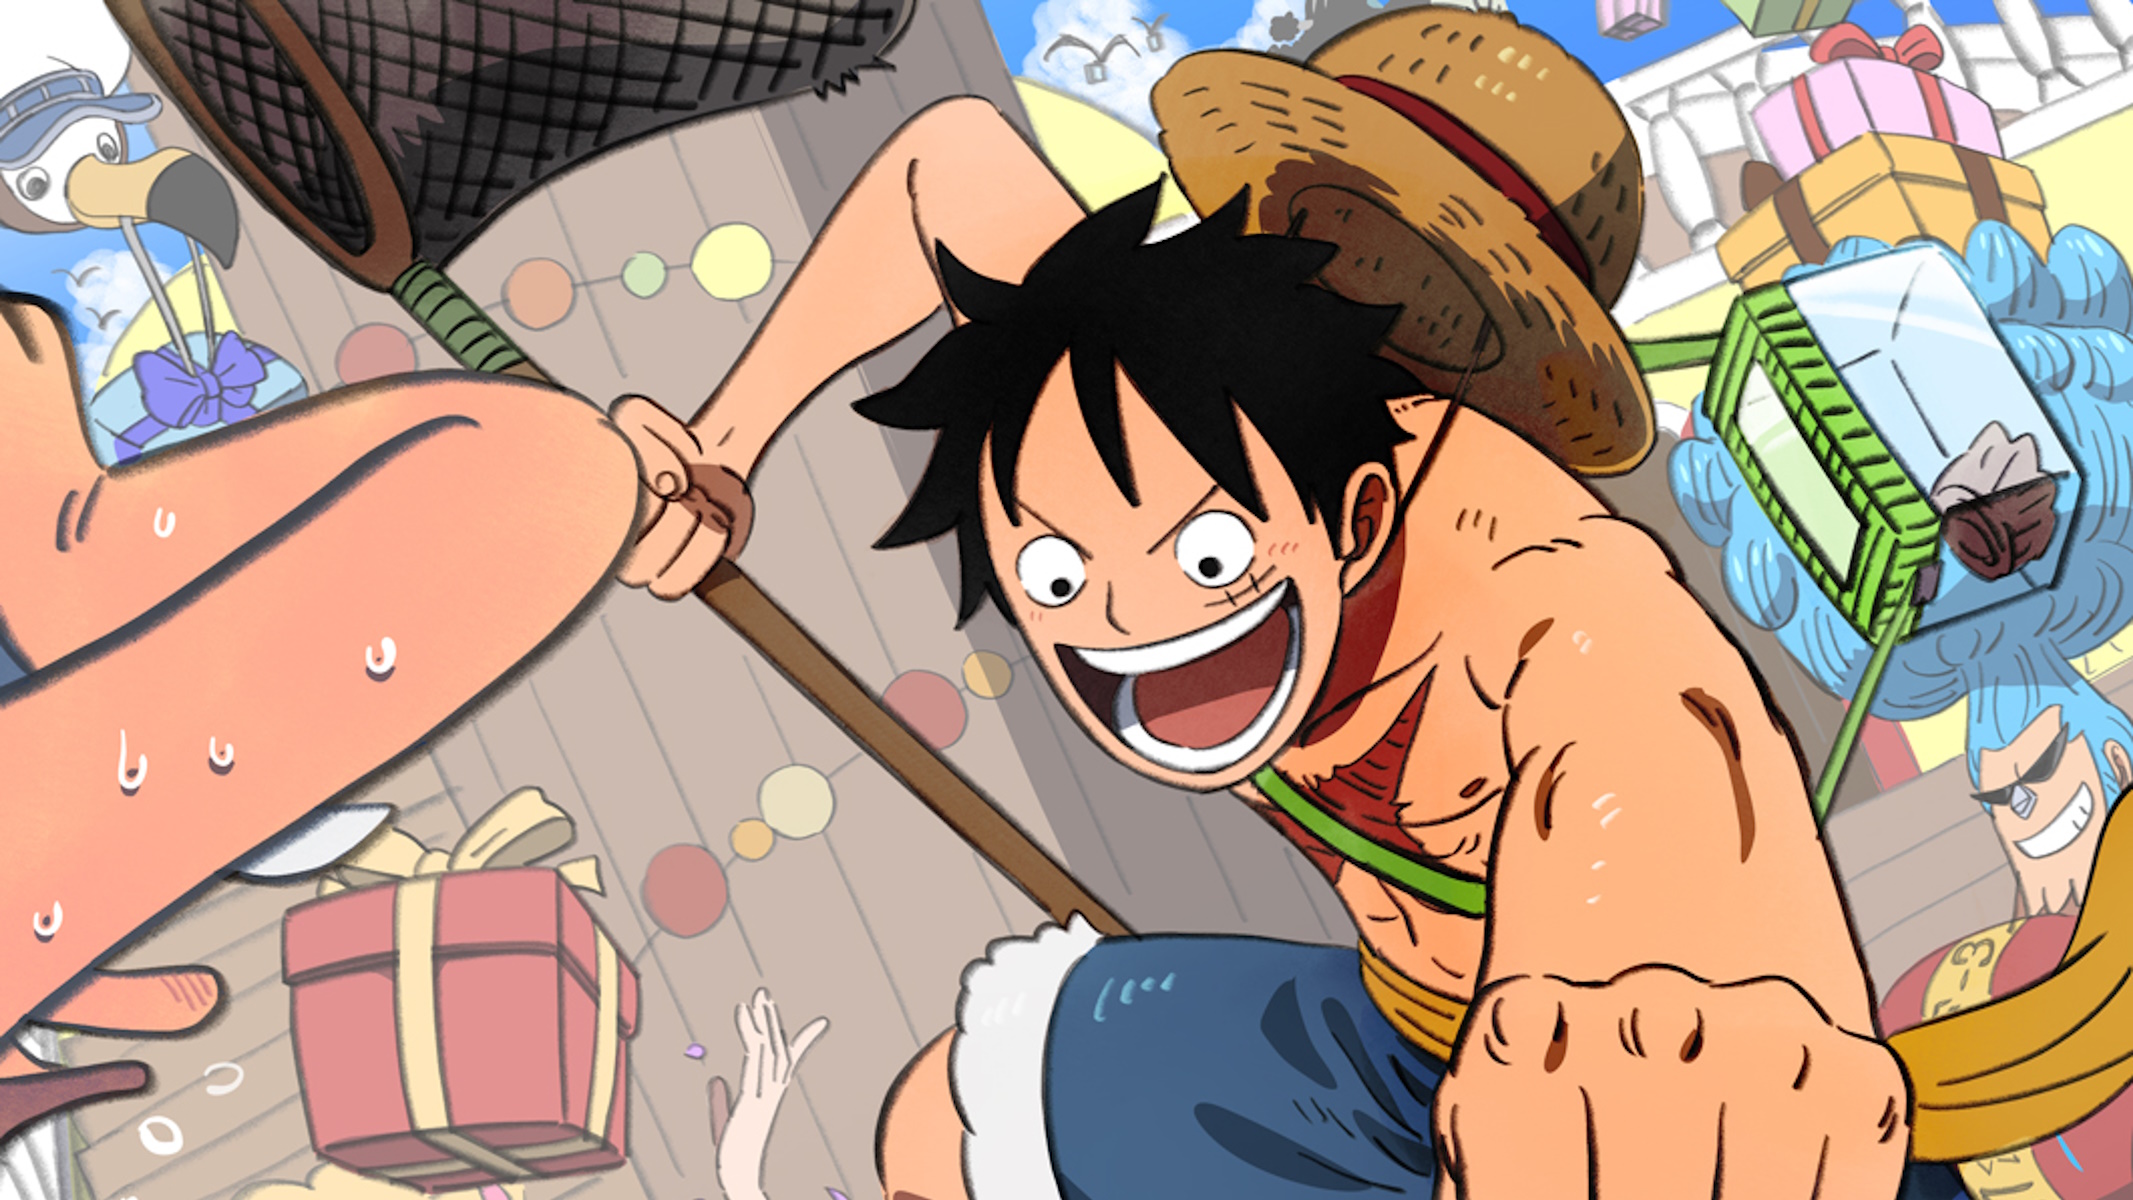 Illustrazione ufficiale di One Piece dedicata a Luffy